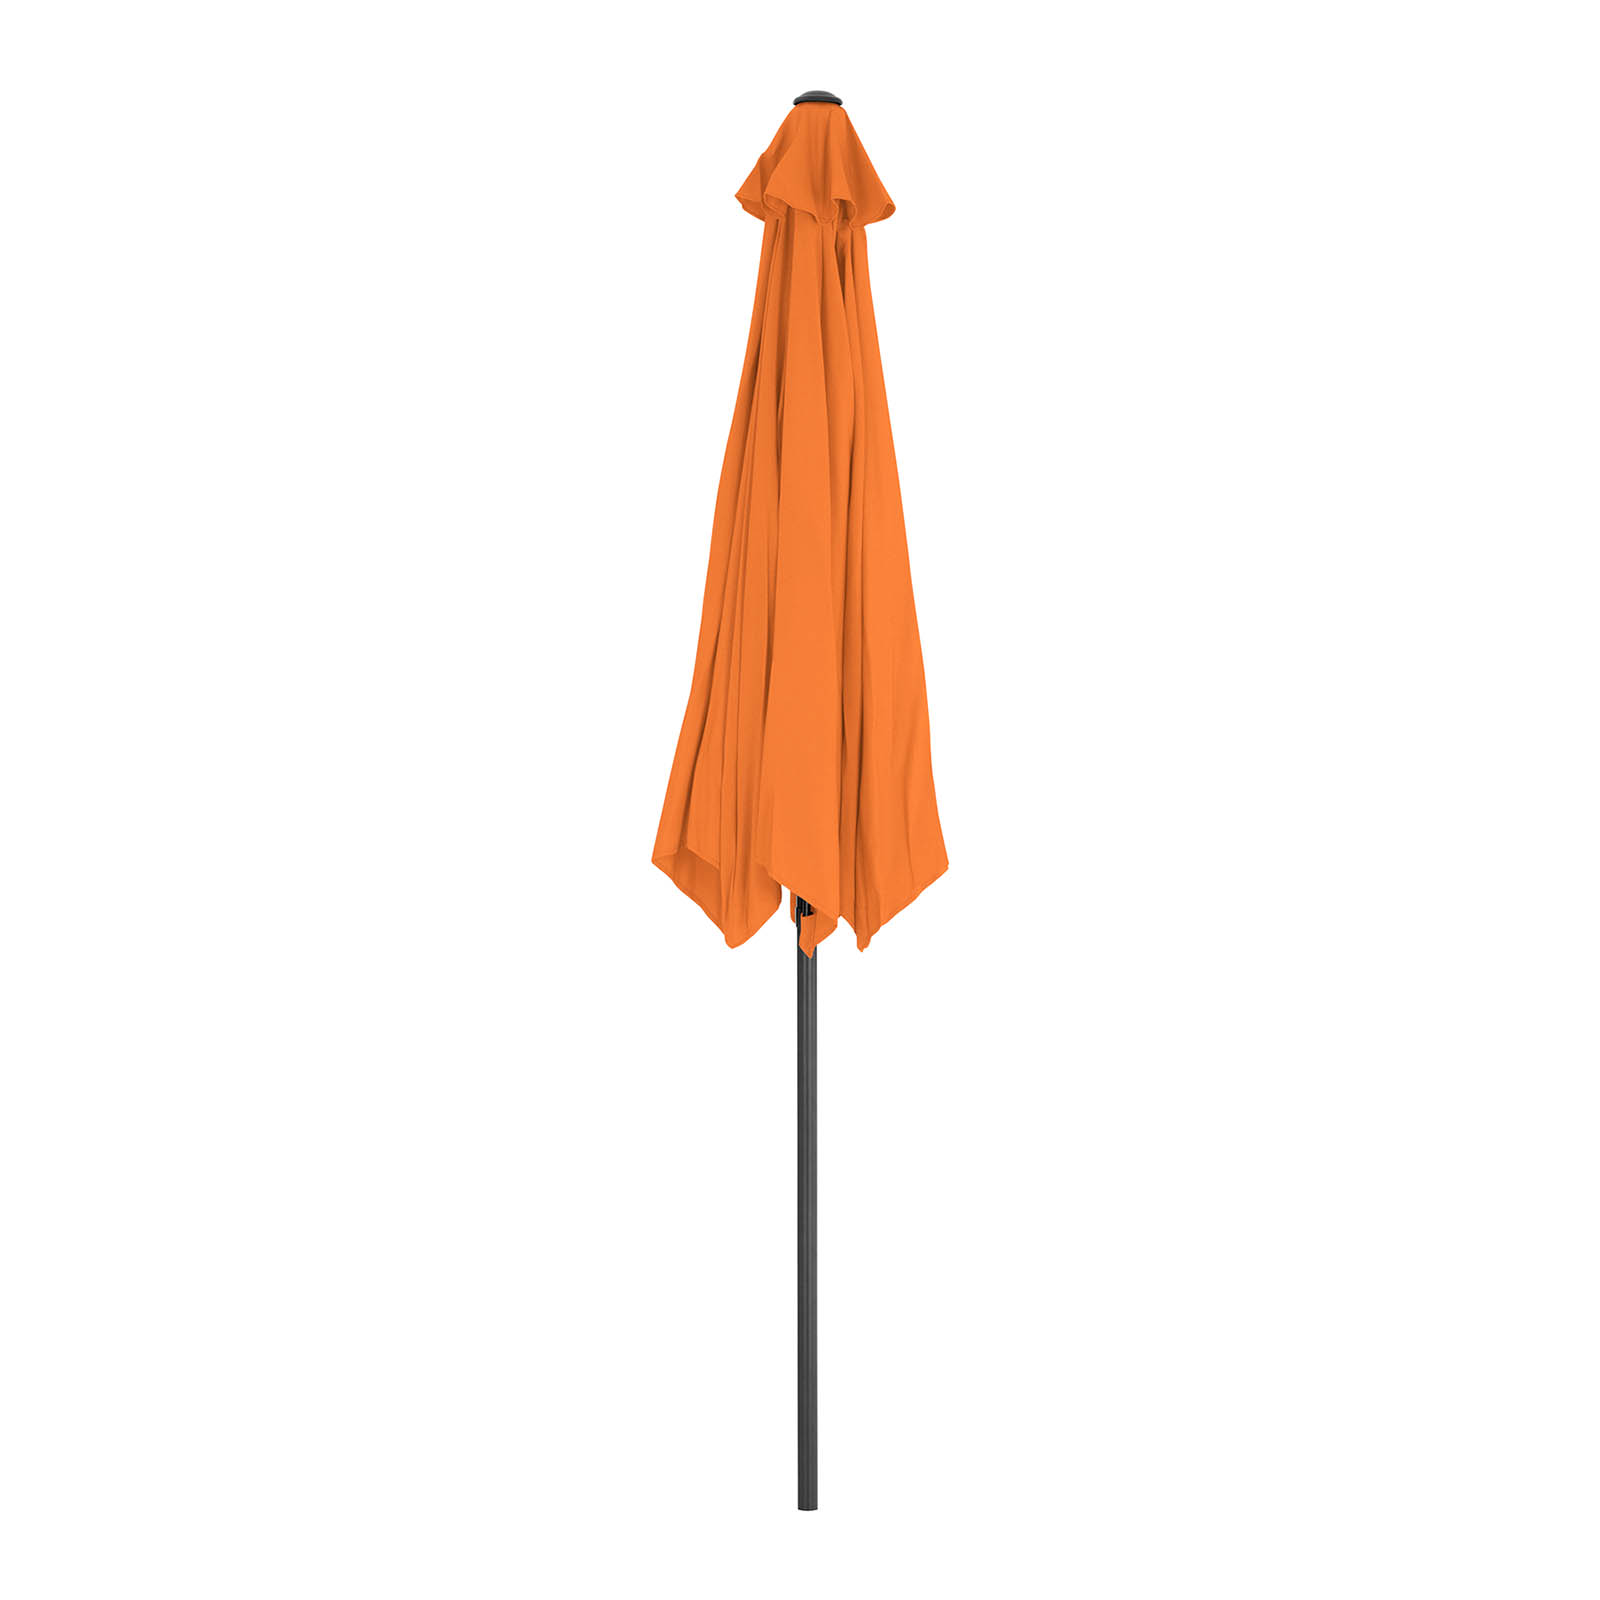 Parasol ogrodowy - pomarańczowy - sześciokątny - Ø300 cm - uchylny